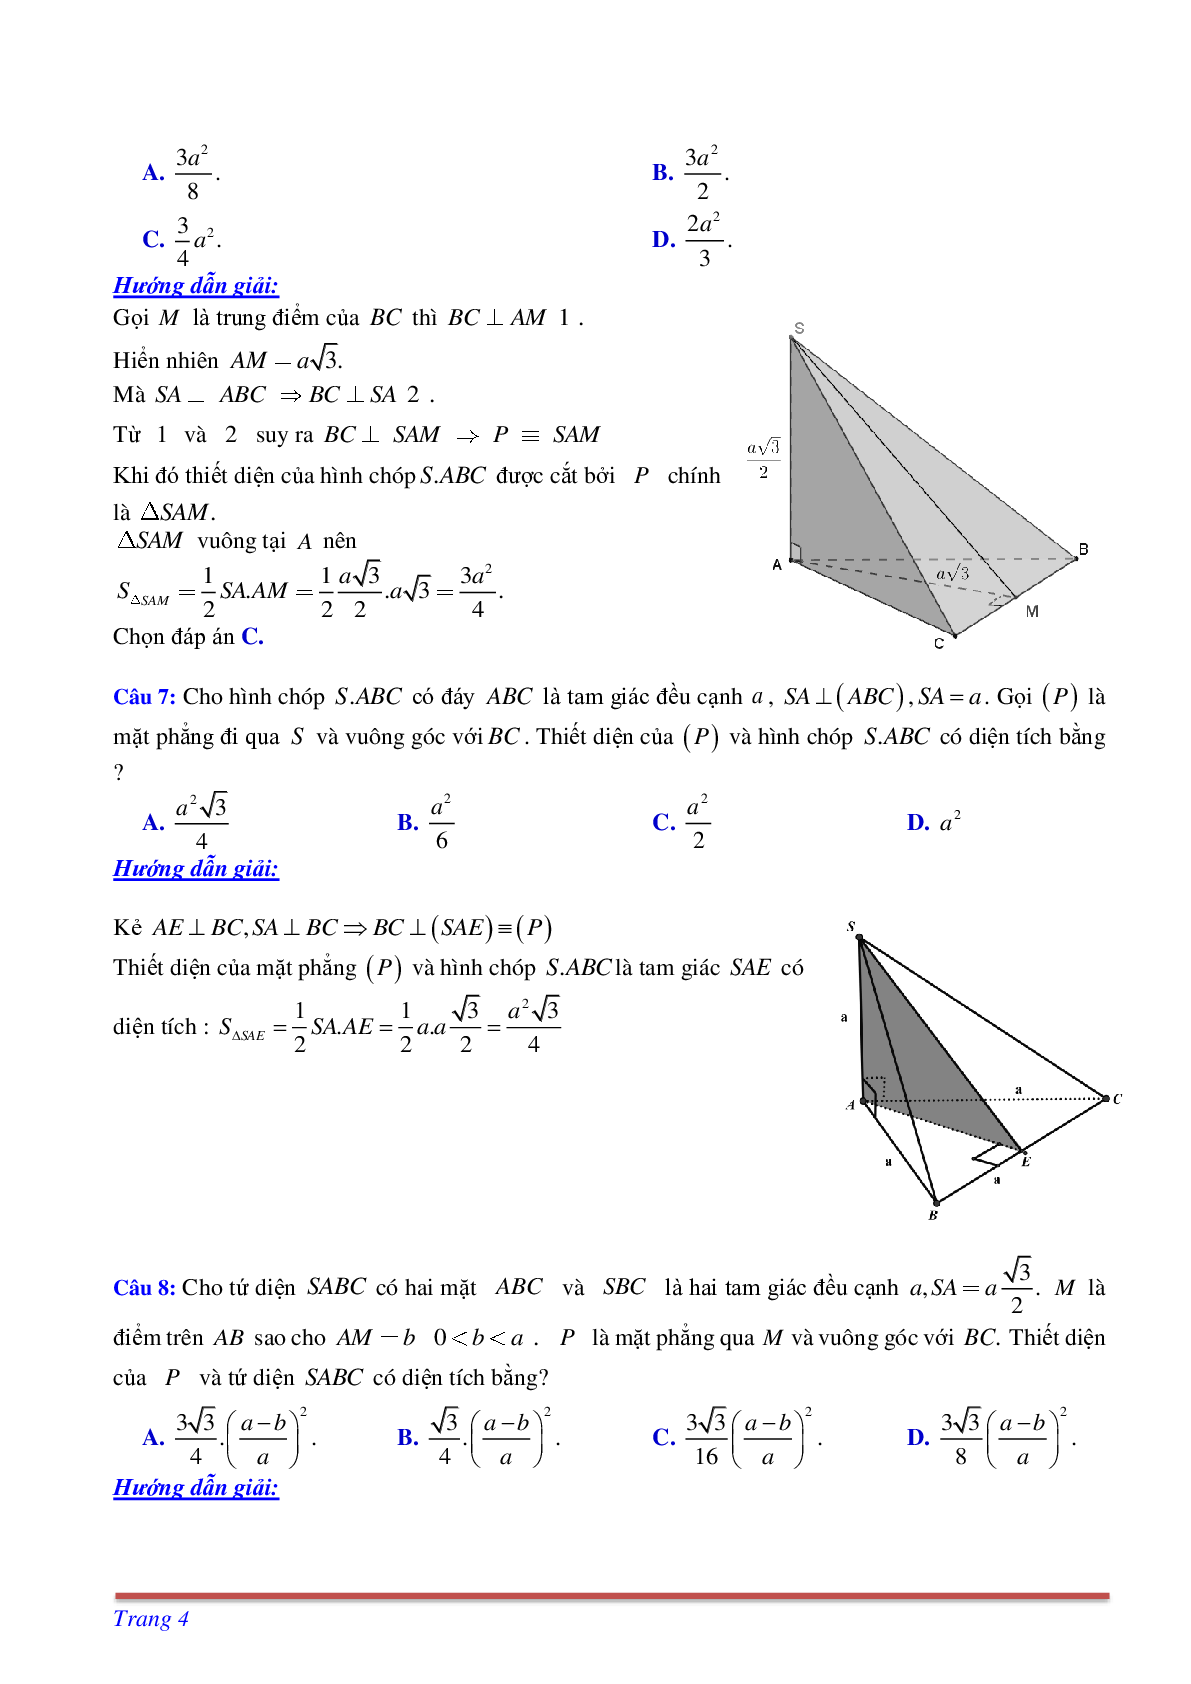 Phương pháp giải và bài tập về Cách tìm thiết diện liên quan đến vuông góc có đáp án (trang 4)